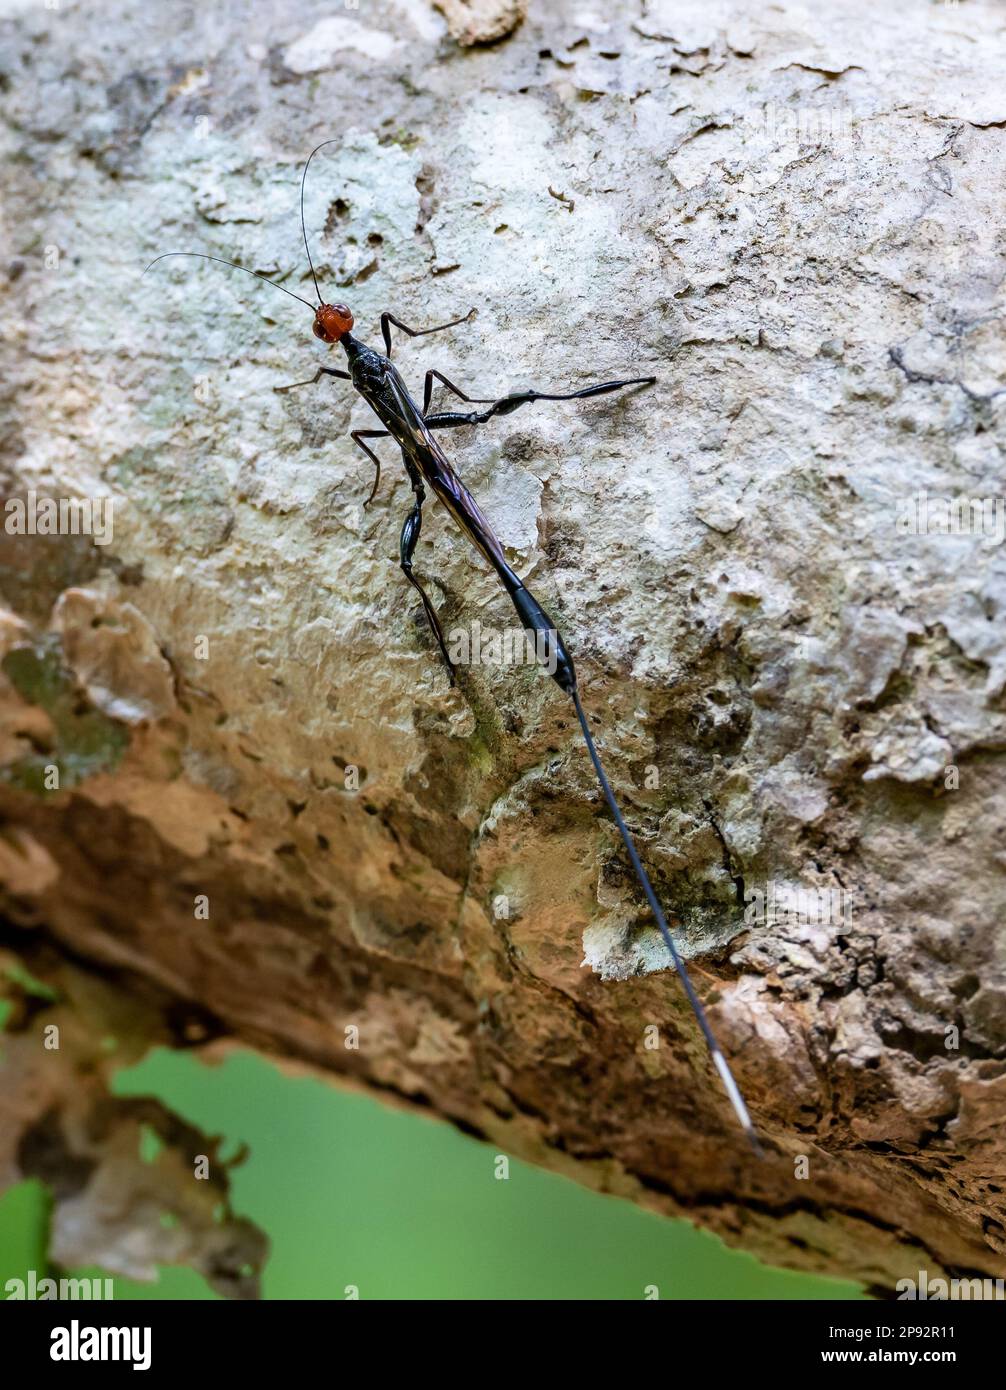 Primo piano di una corona di spine bicolore Wasp (Megischus bicolore) con ovipositor estrodinarmente lungo per la deposizione delle uova nelle larve di coleotteri. Thailandia. Foto Stock